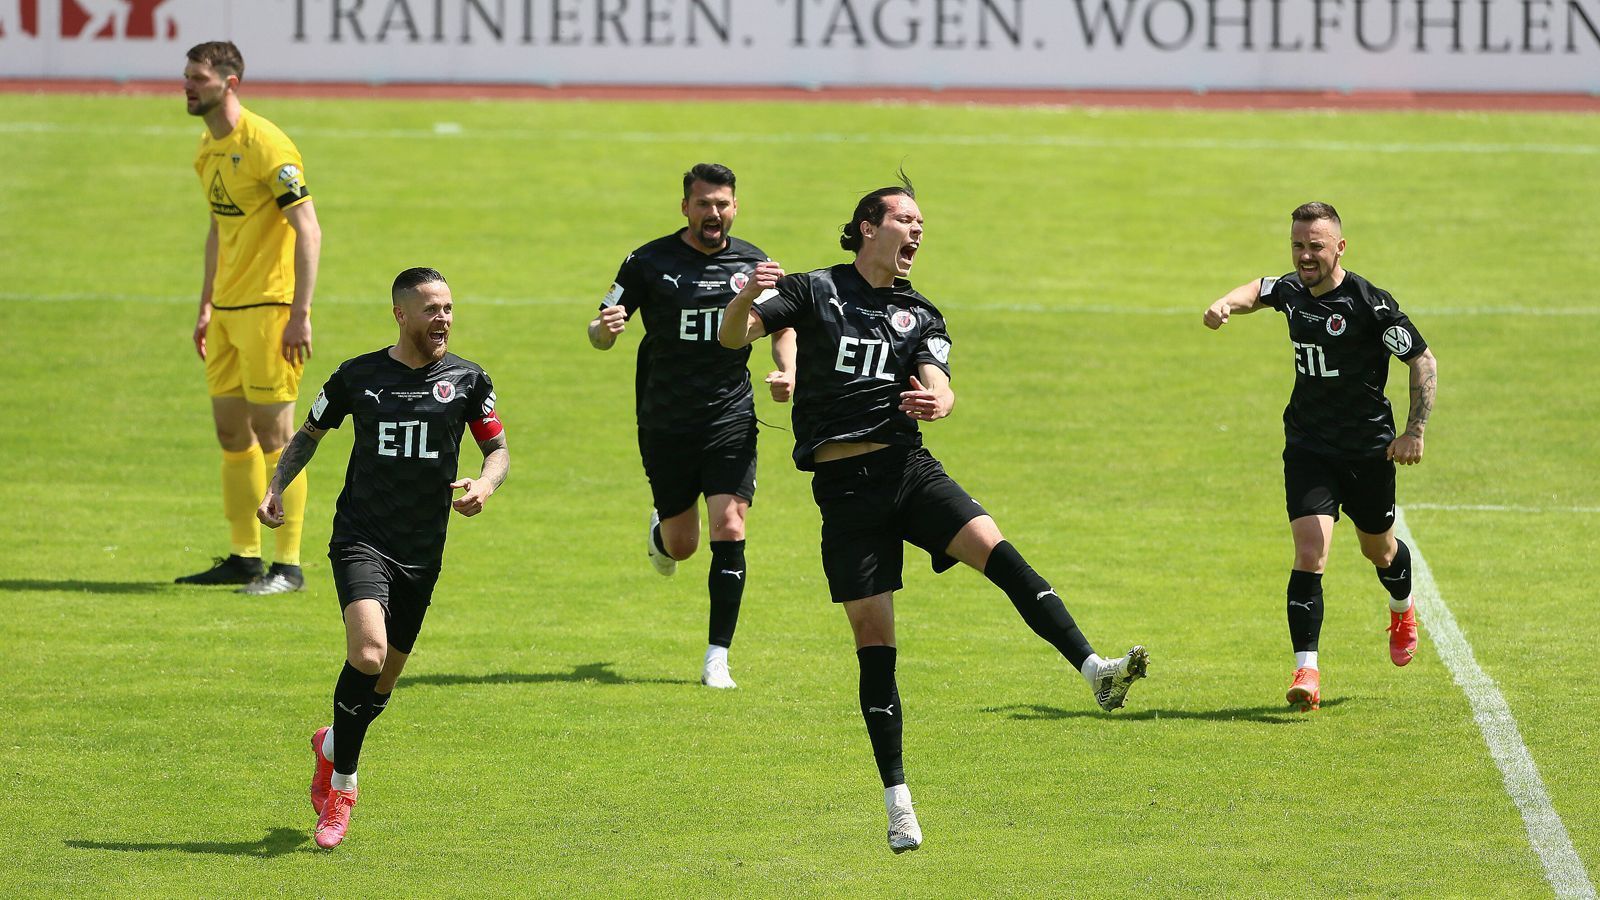 
                <strong>FC Viktoria Köln</strong><br>
                Im Landespokal Mittelrhein setzte sich der Drittligist mit 2:0 gegen den Regionalligisten Alemannia Aachen durch. Zum insgesamt siebten Mal triumphierte Köln am Mittelrhein und zog erstmals seit 2018 wieder in die erste Runde des DFB-Pokals ein. 
              